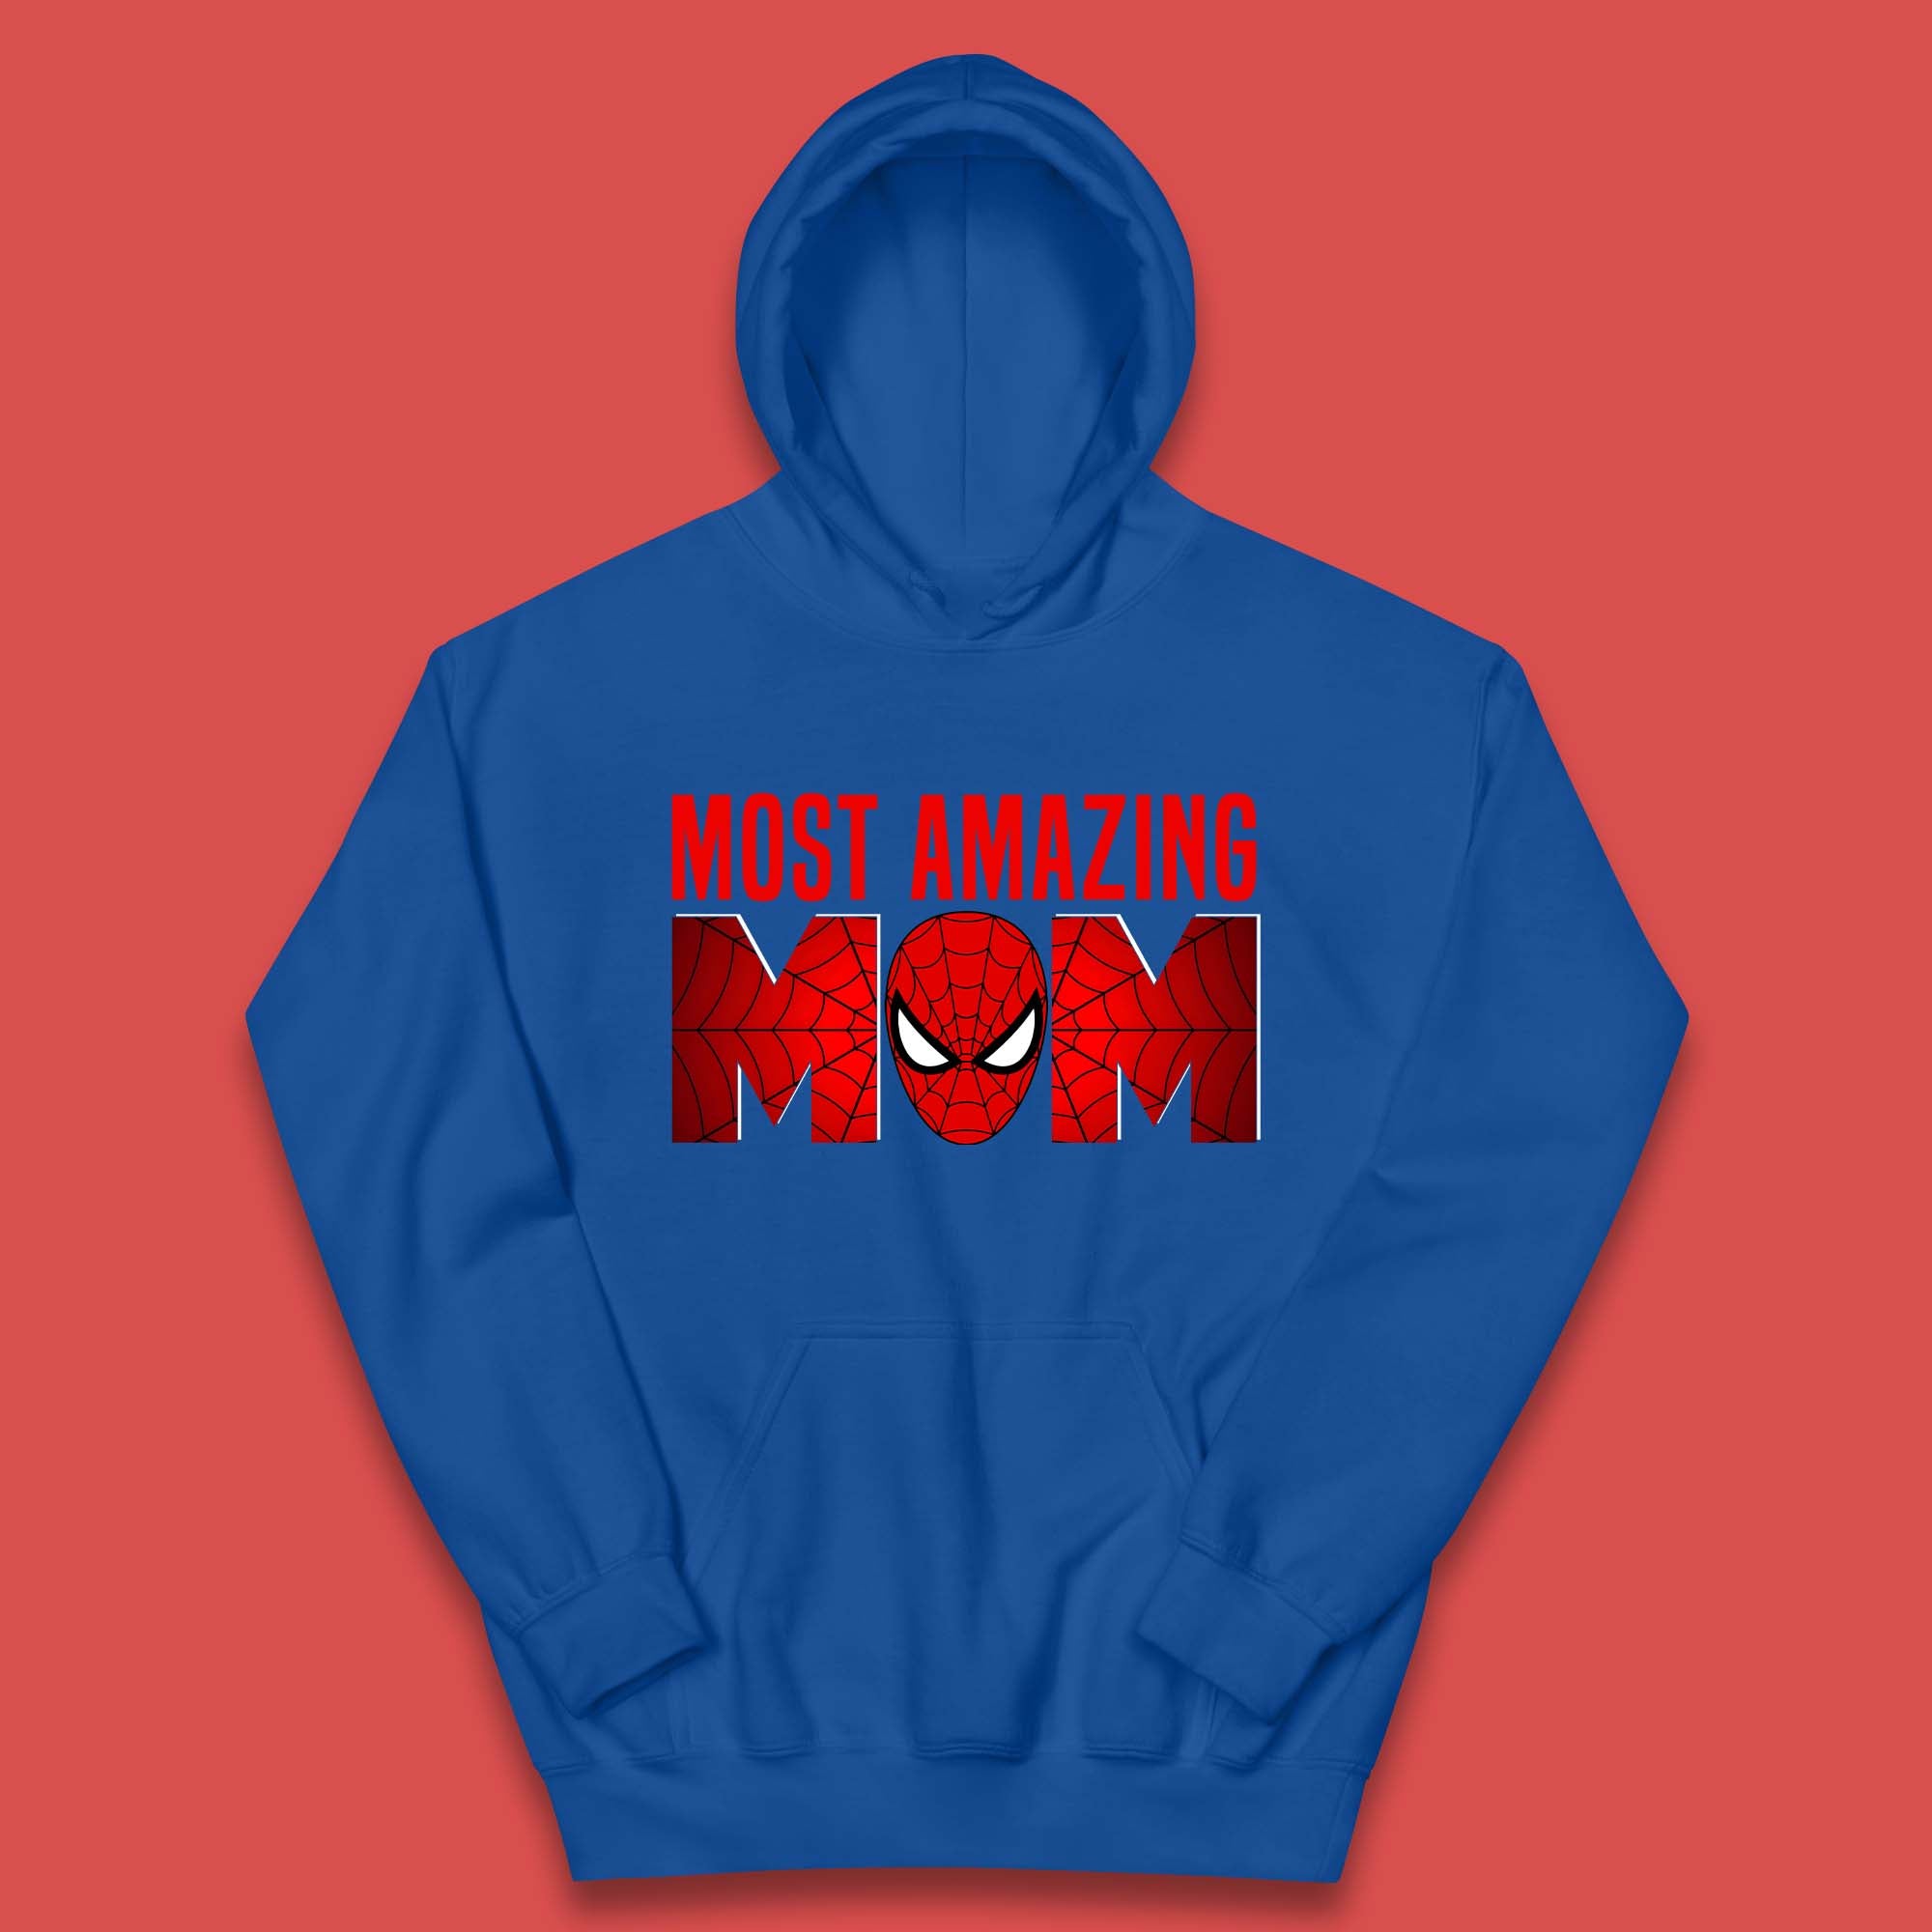 Most Amazing Spider Mom Kids Hoodie